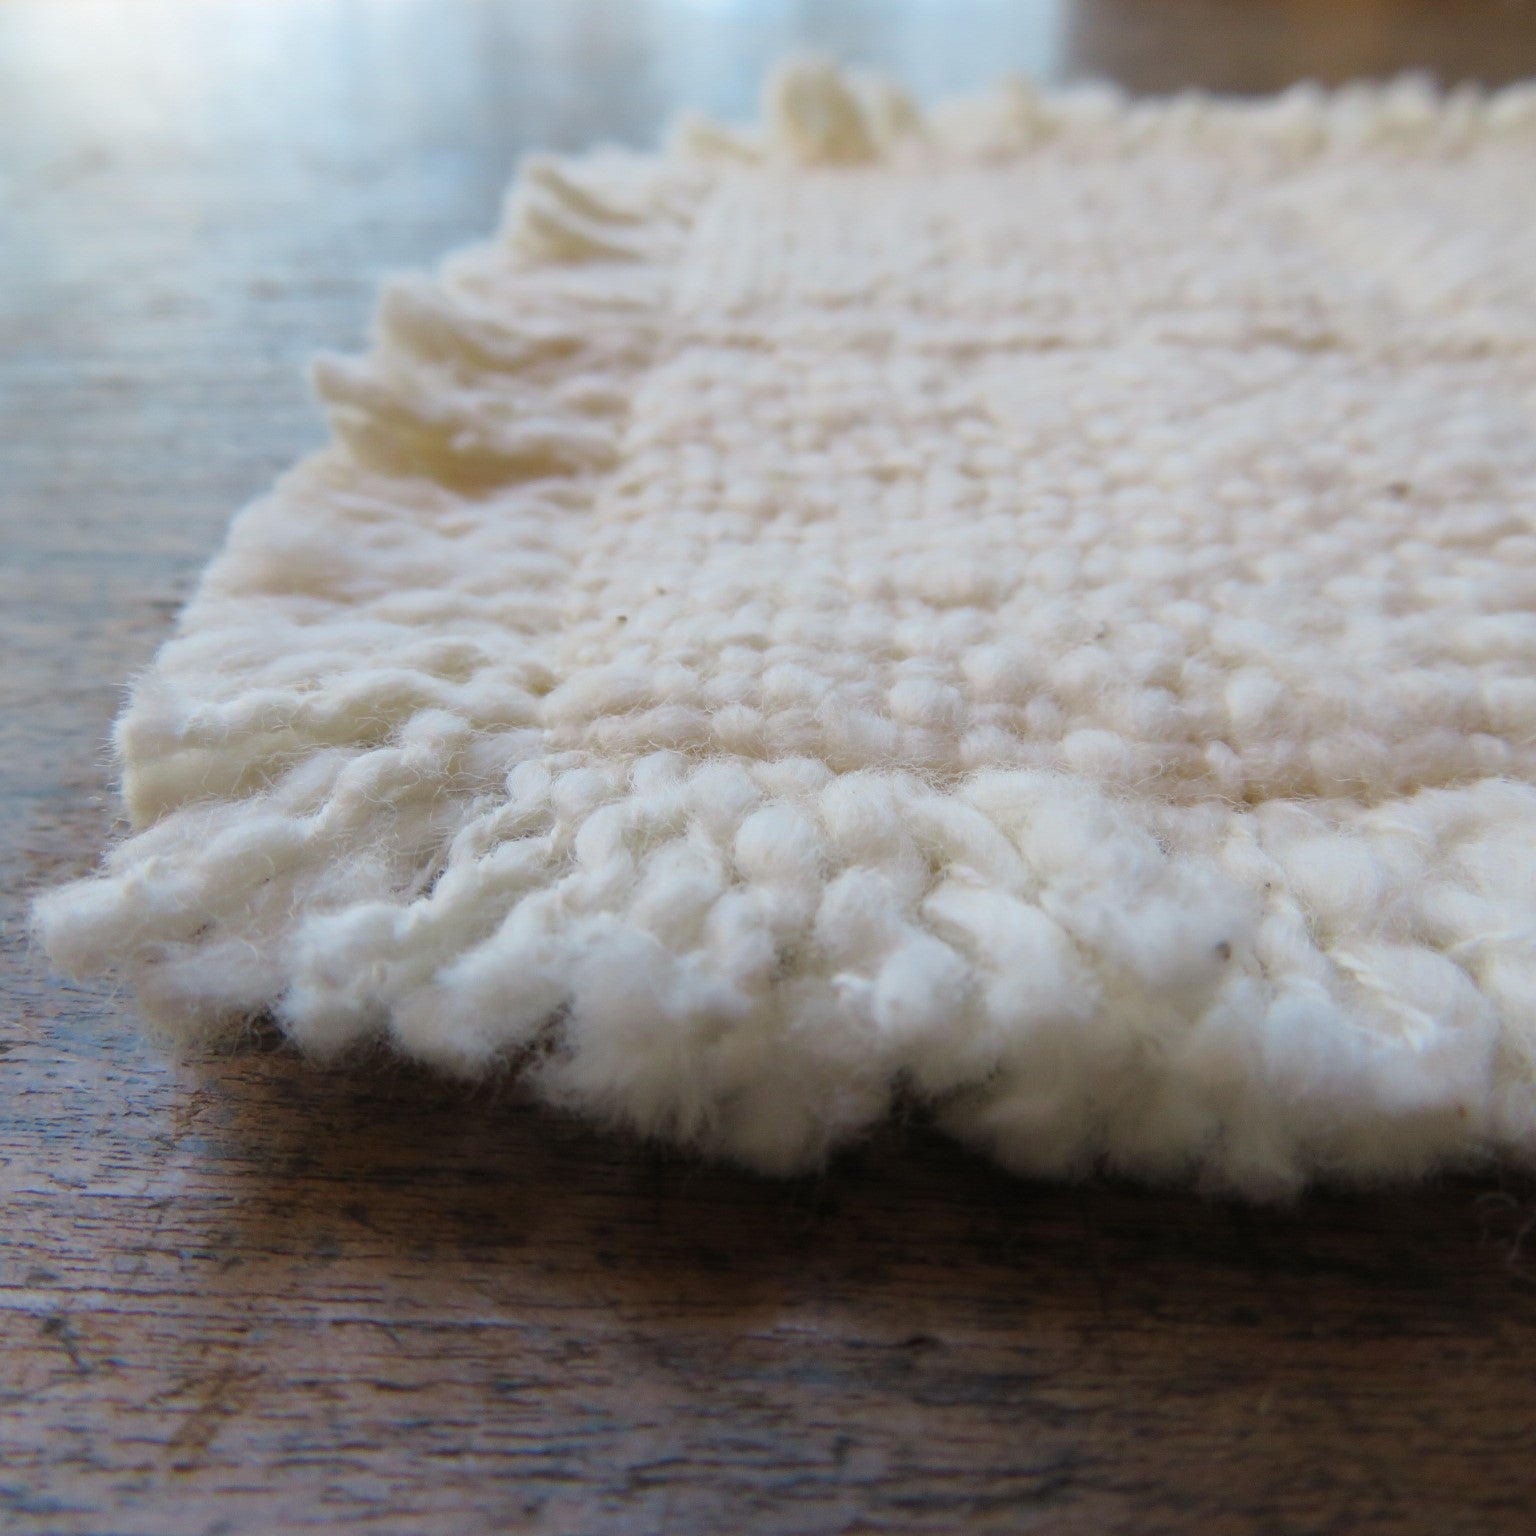 わたからつむぐのコットン製品は、自給率０％の国産綿を自社栽培し、無農薬で安心できる製品に取り組んでいます。わたから わたからつむぐ マインド松井 日本の綿 和綿 綿 コットン 100% 自給率 オーガニックコットン 無農薬 わめん 日本製  国内 国産 国内栽培 和綿とは 種類 コットンの種類 綿の種類 ブランド ショップ オンラインショップ ものづくり ガラ紡 特徴 自社工場 縫製工場　アパレル 小物 製作 国内製造 販売 手作業オリジナル オリジナル商品 コットン製品 コットン商品 綿製品 オーガニックコットン商品 プレゼント 贈り物 ギフト クレンジング フェイスタオル ケア用品 健康 健康グッズ ボディタオル  タオル 洗顔 腹巻 腹巻パンツ 腹巻スパッツ 布ナプキン ストール ブランケット コースター ランチョンマット ベビー用品 ベビースタイ ラグマット 靴下 ソックス 部屋着 パジャマ 冷え取り 温活 睡眠 睡眠グッズ 綿 わた コットン オーガニックコットン 綿１００％　コットン１００％　オーガニックコットン１００％ 